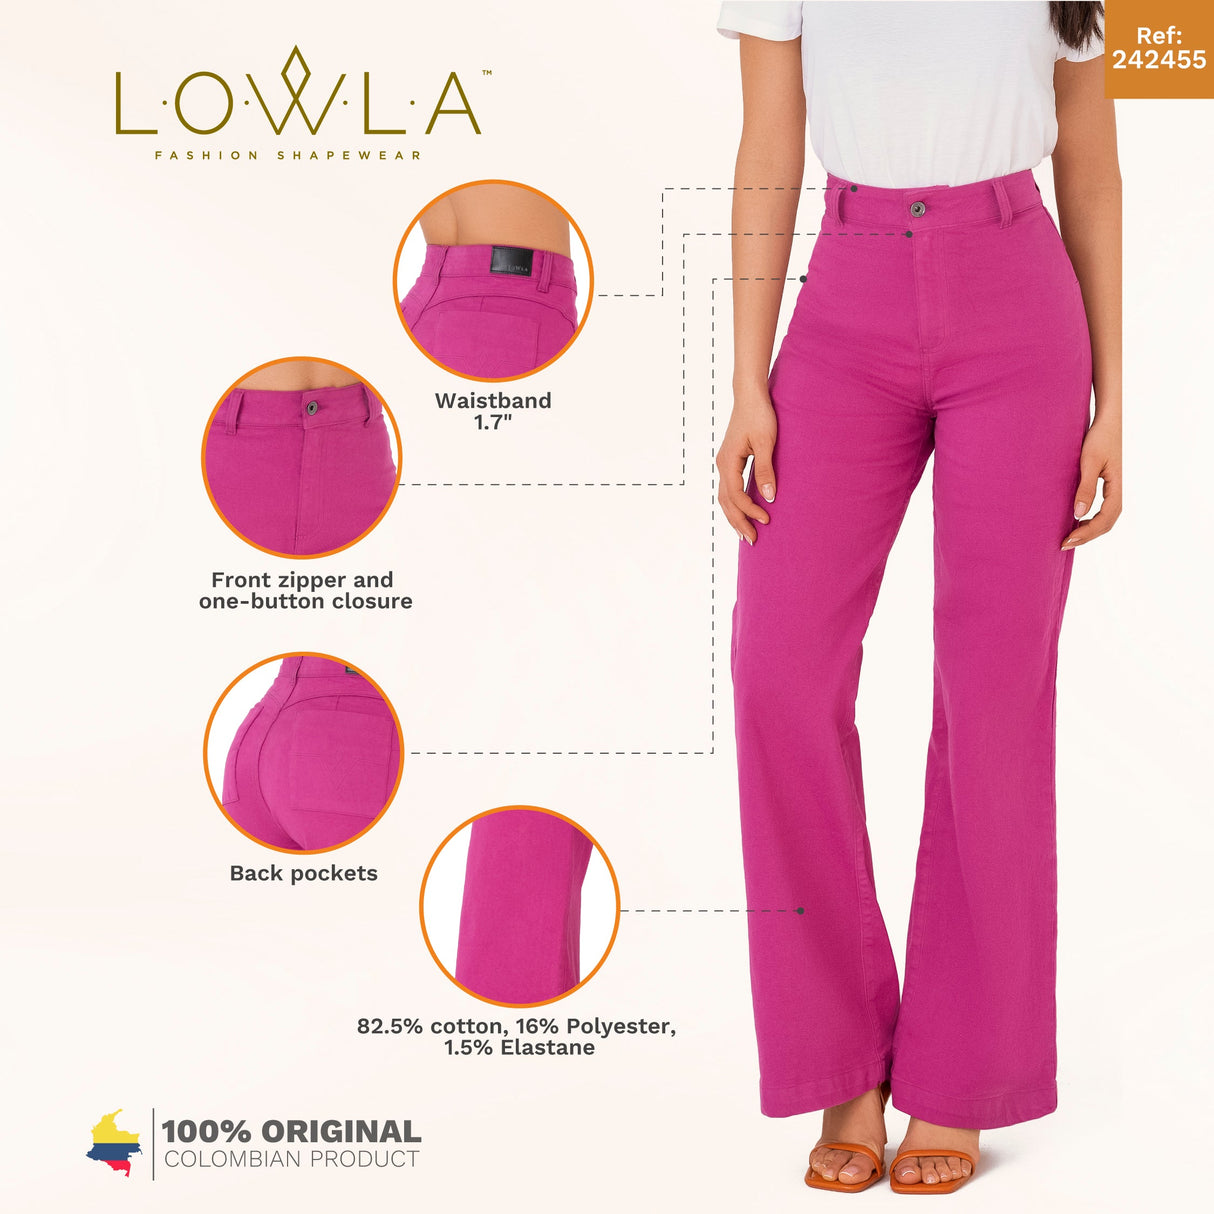 L.O.W.L.A SHAPEWEAR LOWLA Butt Lifting Jeans